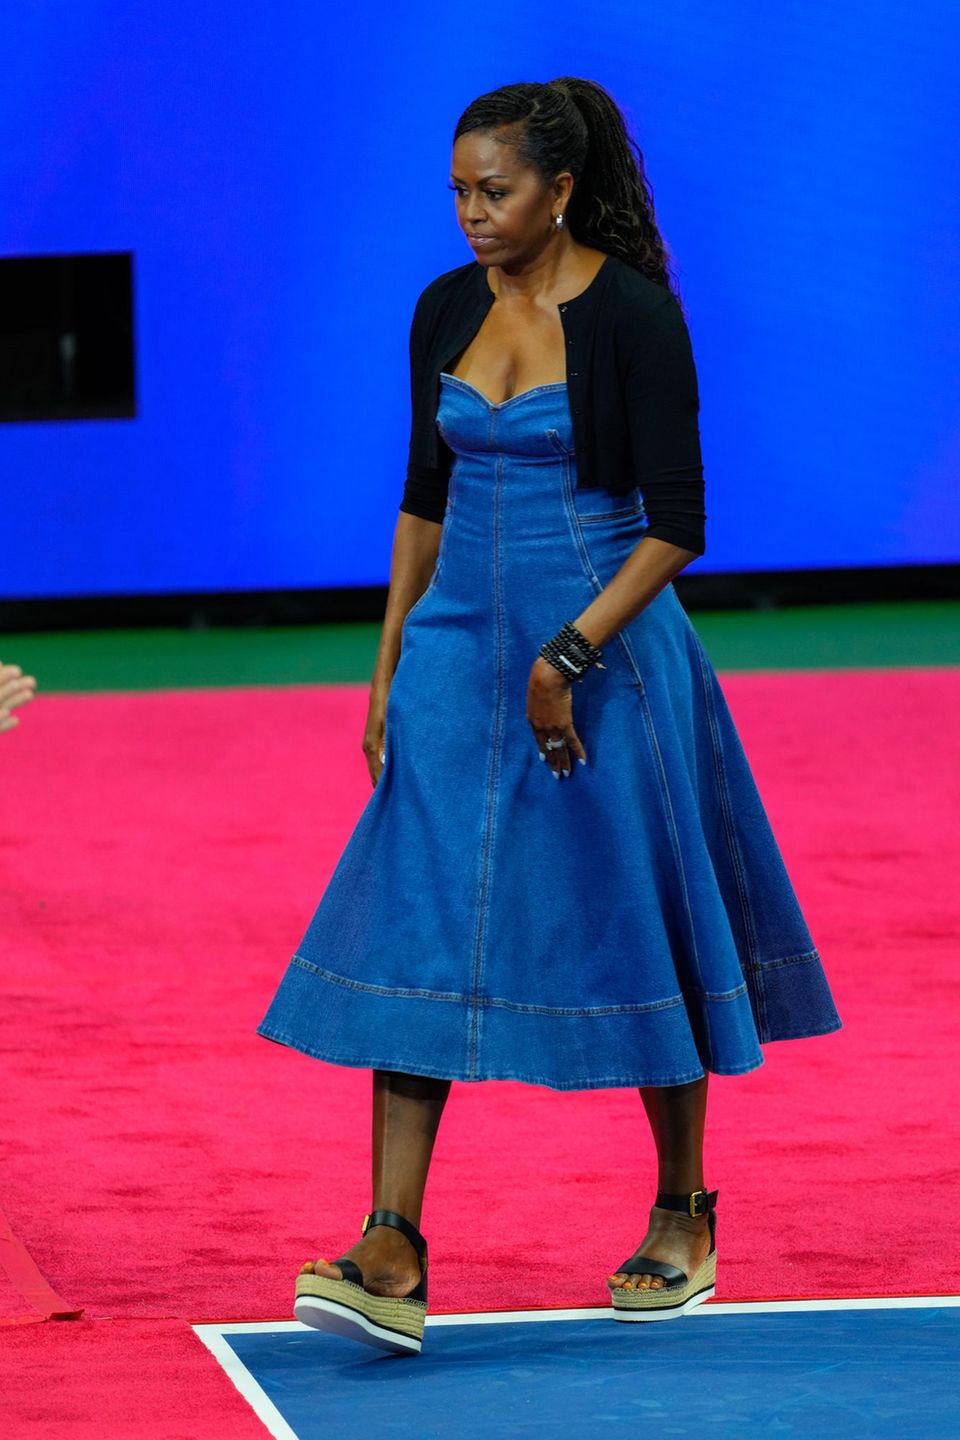 In einem lässigen, aber doch eleganten Look besucht Michelle Obama 2023 die "US Open Tennis Championships" in New York. Ihr Stilgefühl stellt sie in einem Midi-Jeanskleid mit einem relativ ausgestellten Rock unter Beweis. Dazu kombiniert sie ein schwarzes Bolero-Jäckchen und Sandalen mit Plateausohlen.